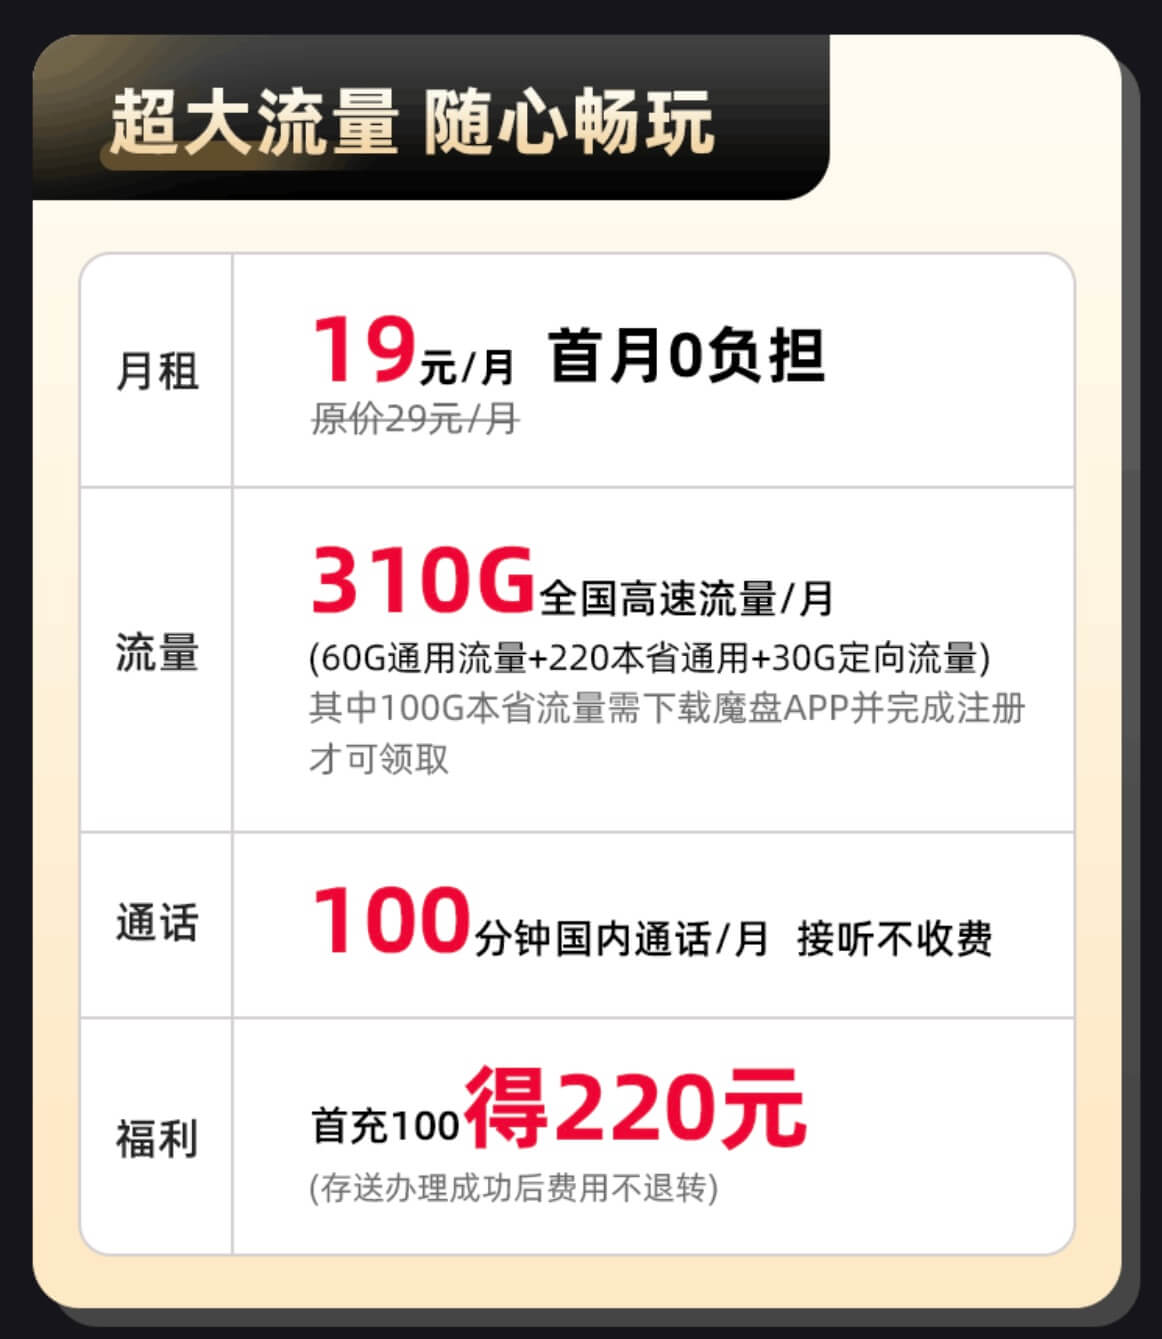 四川电信超大流量卡———电信星跃卡（19元/月，310G流量+100分钟通话）